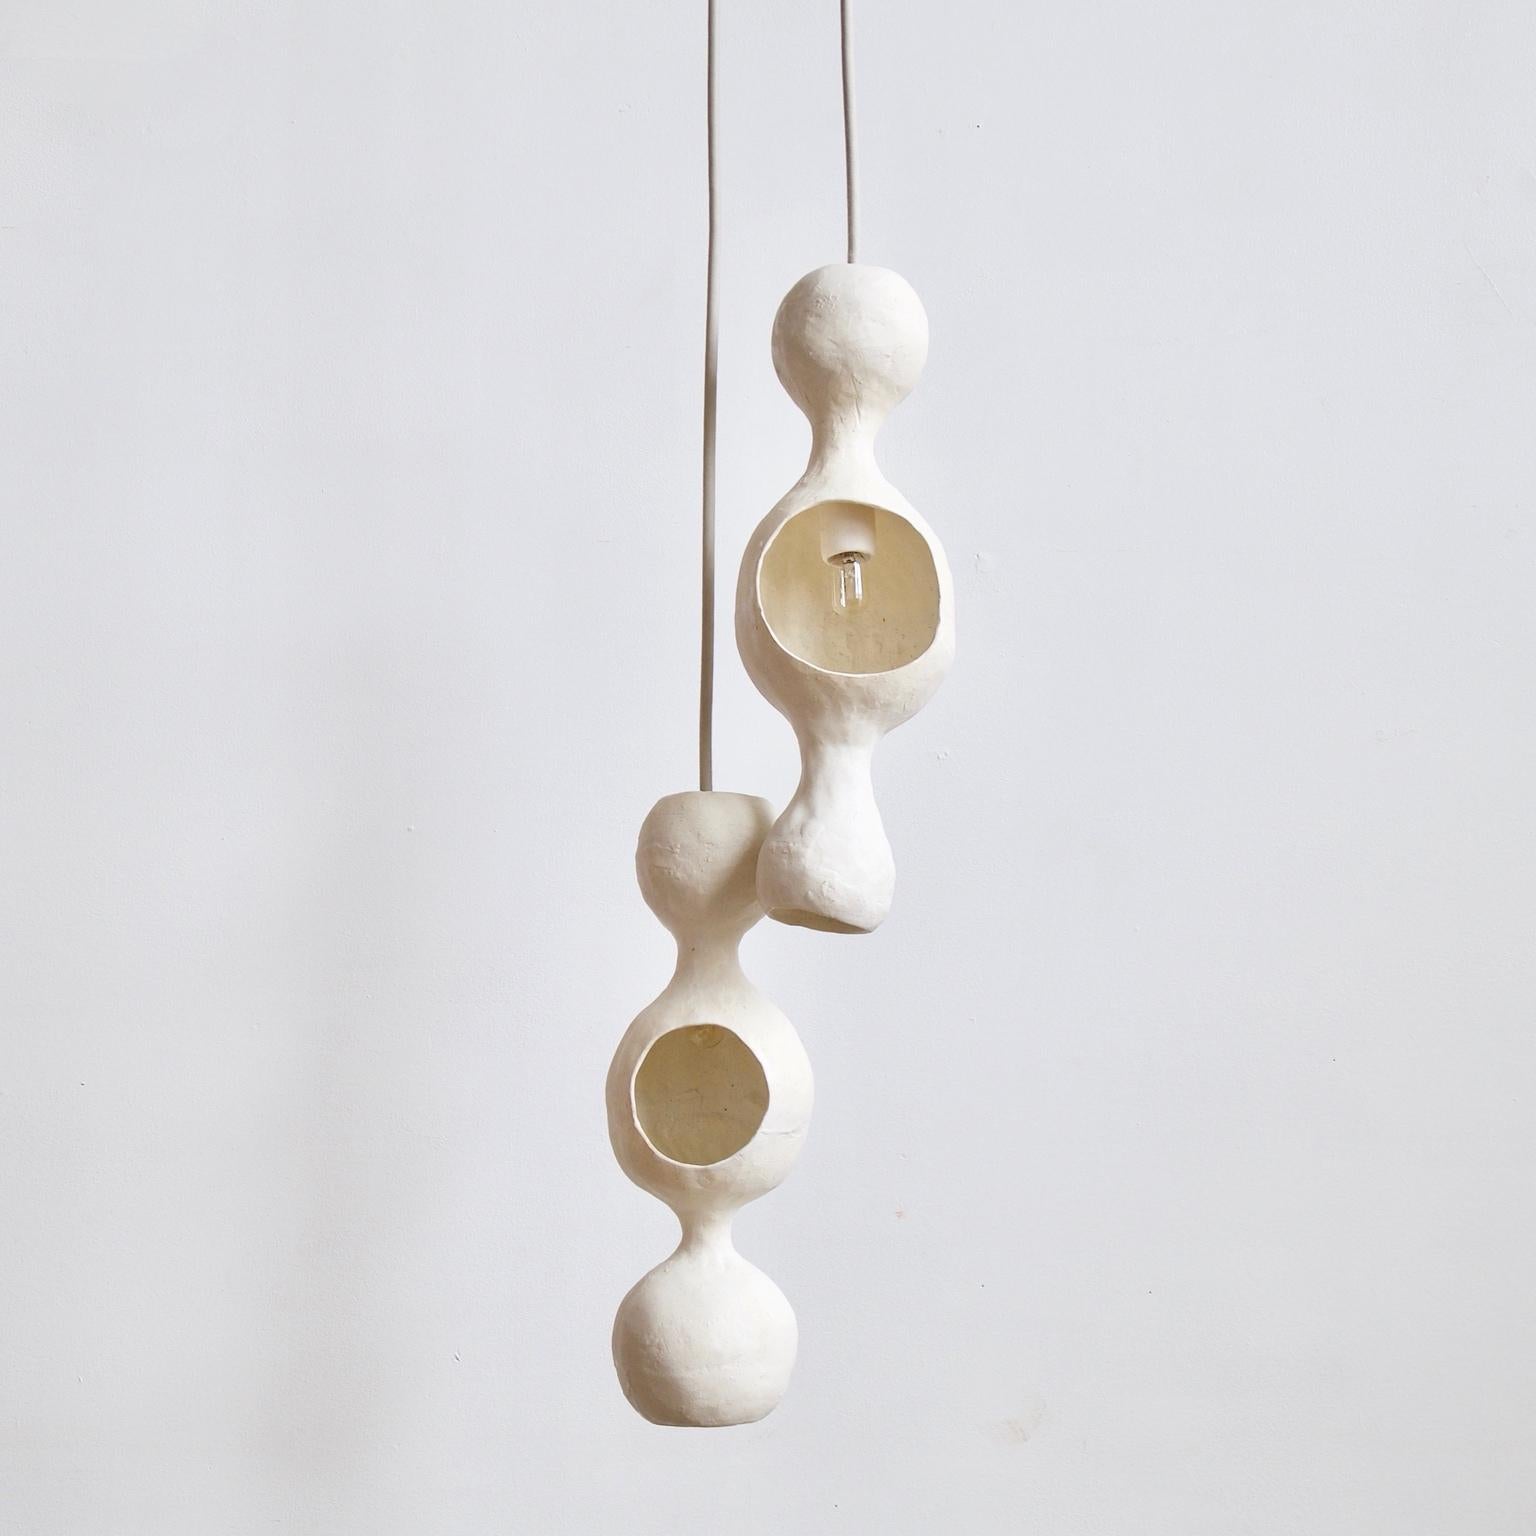 White Bowerbird couple ist eine zeitgenössische, handgefertigte, doppelschalige Hängeleuchte aus Keramik mit mattweißer Glasur, deren warmes Licht von einer runden, fröhlichen Form reflektiert wird. Jede Schale ist individuell von Hand geformt und